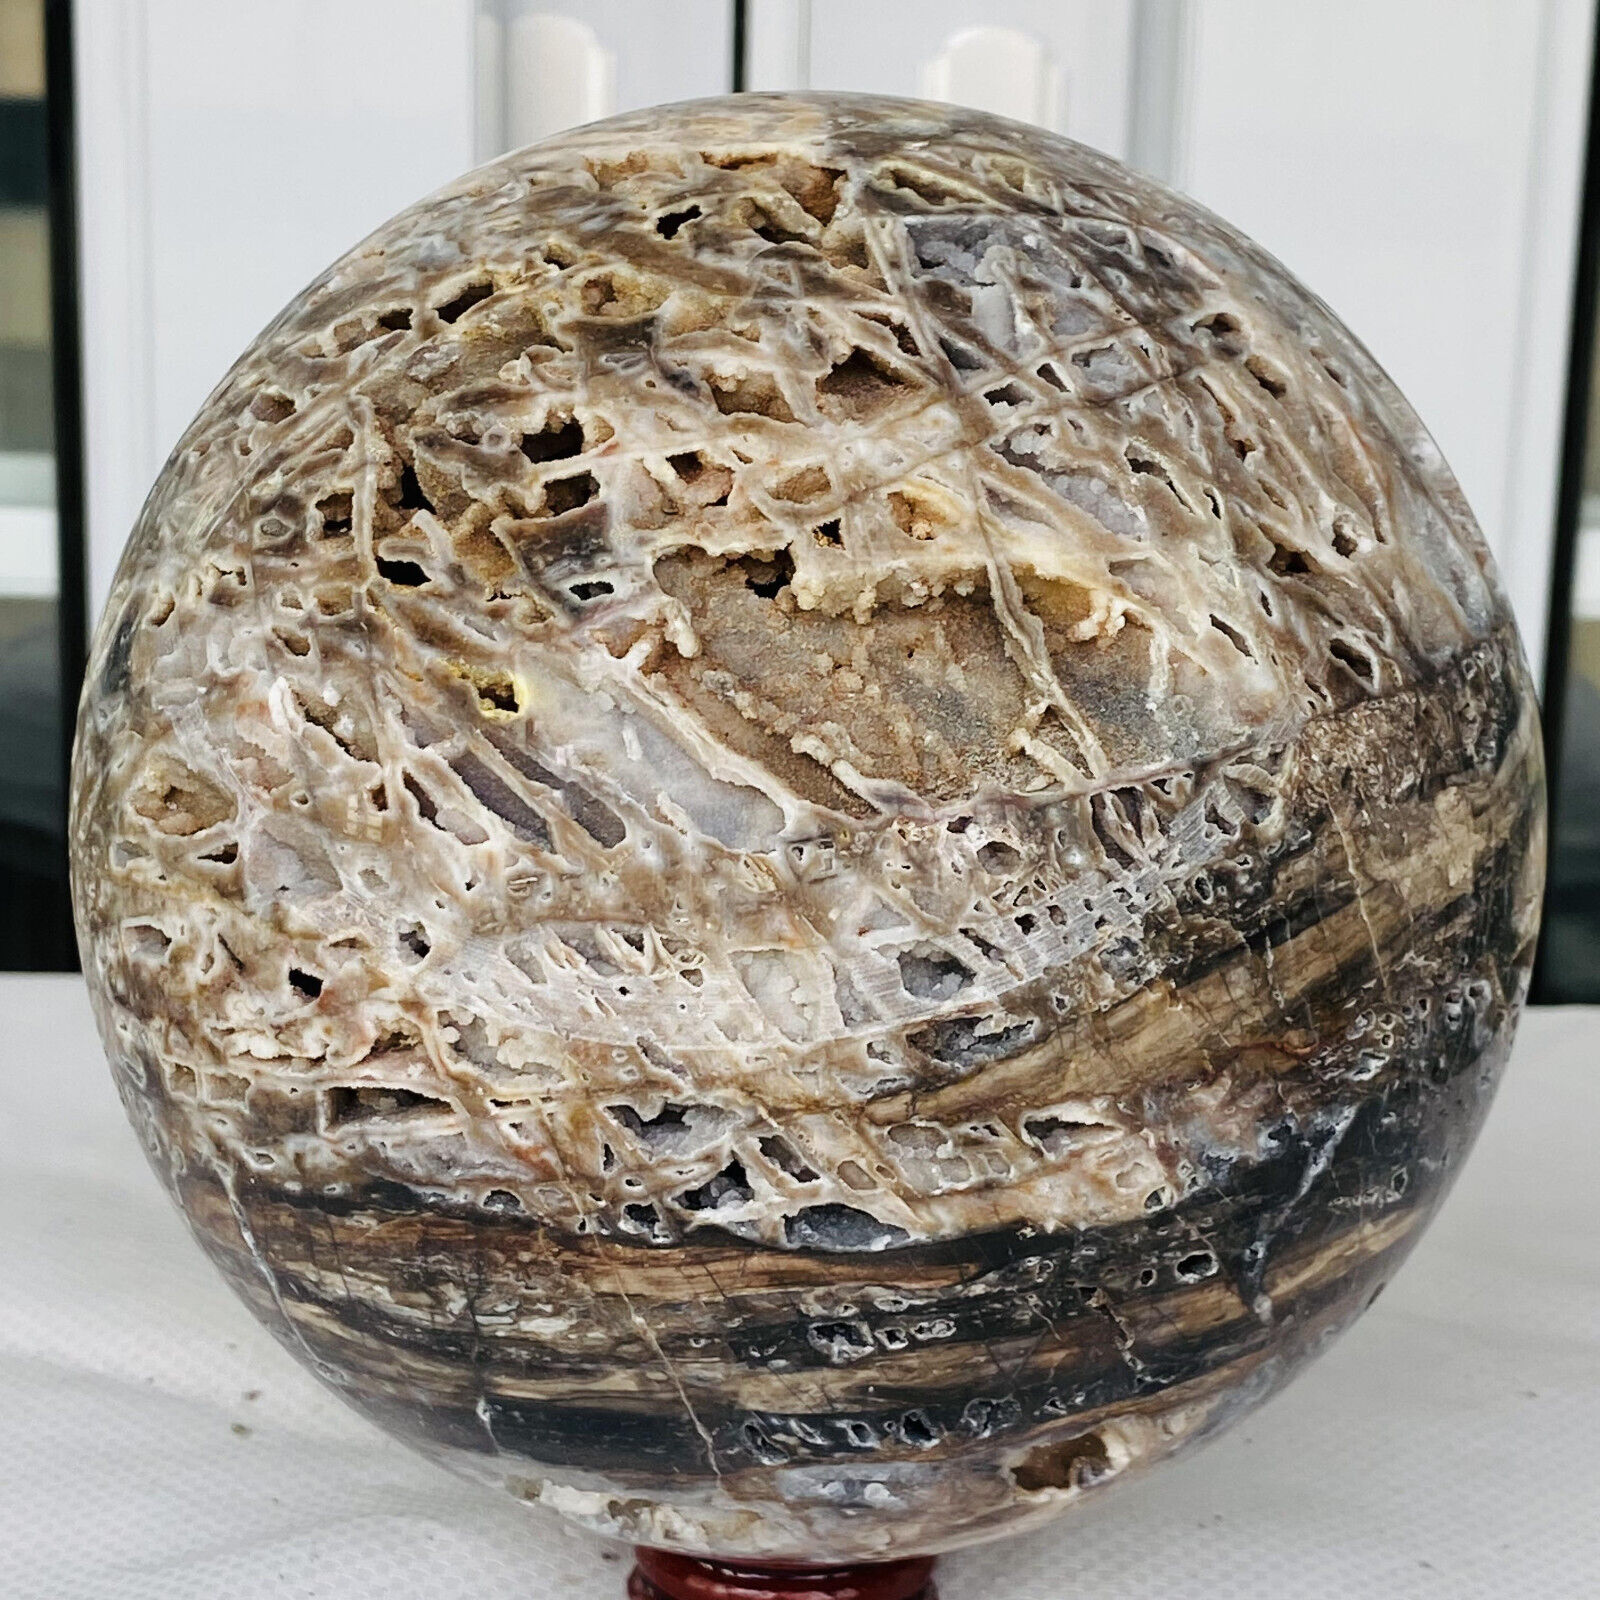 4120g Natural Sphalerite Quartz Crystal Sphere Ball Reiki Healing